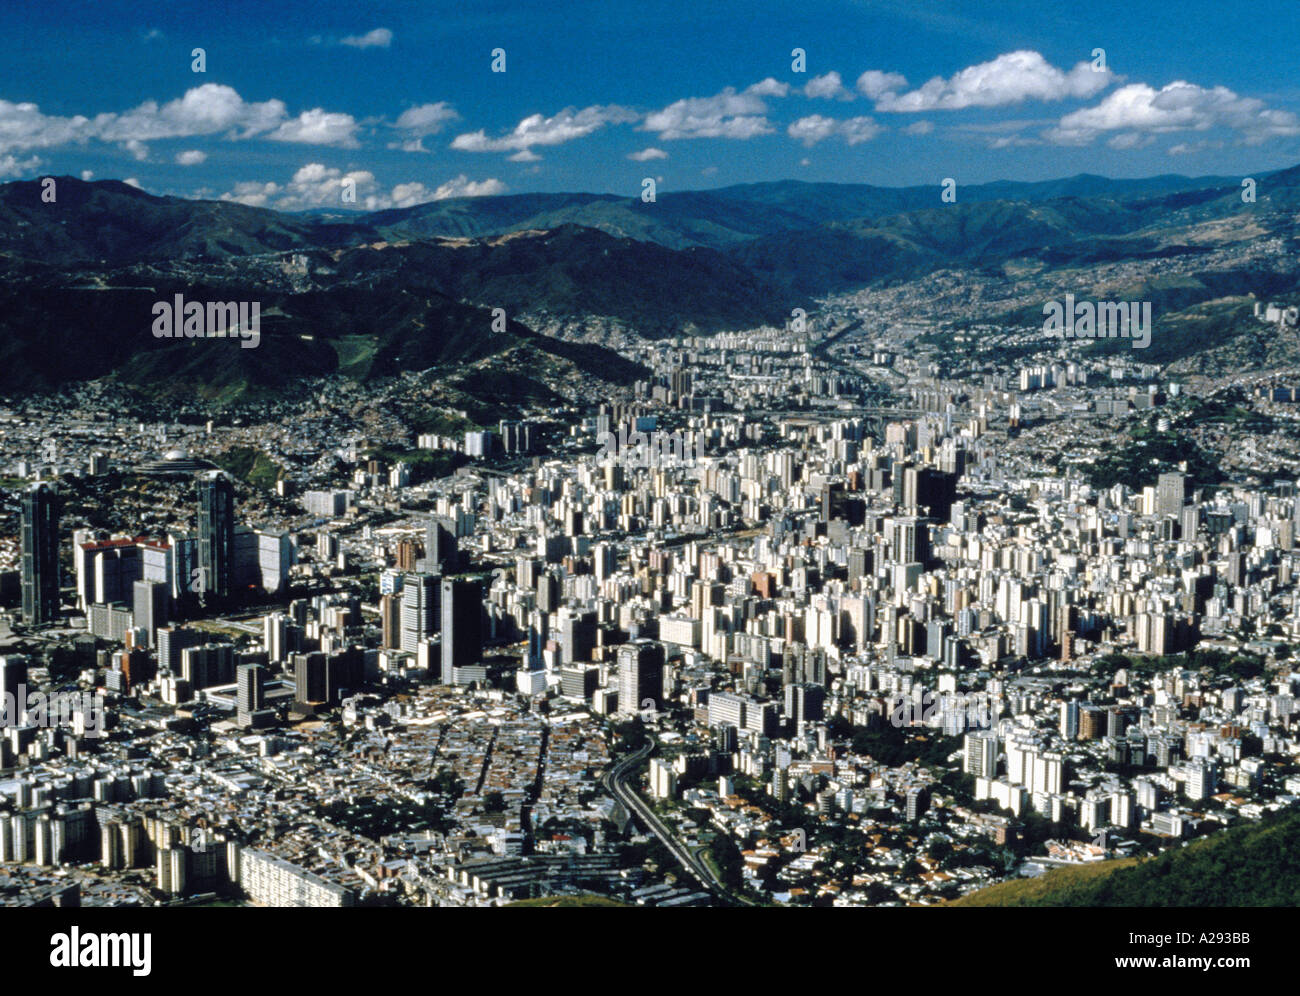 Large Vue aérienne de la capitale de Caracas venezuela Banque D'Images